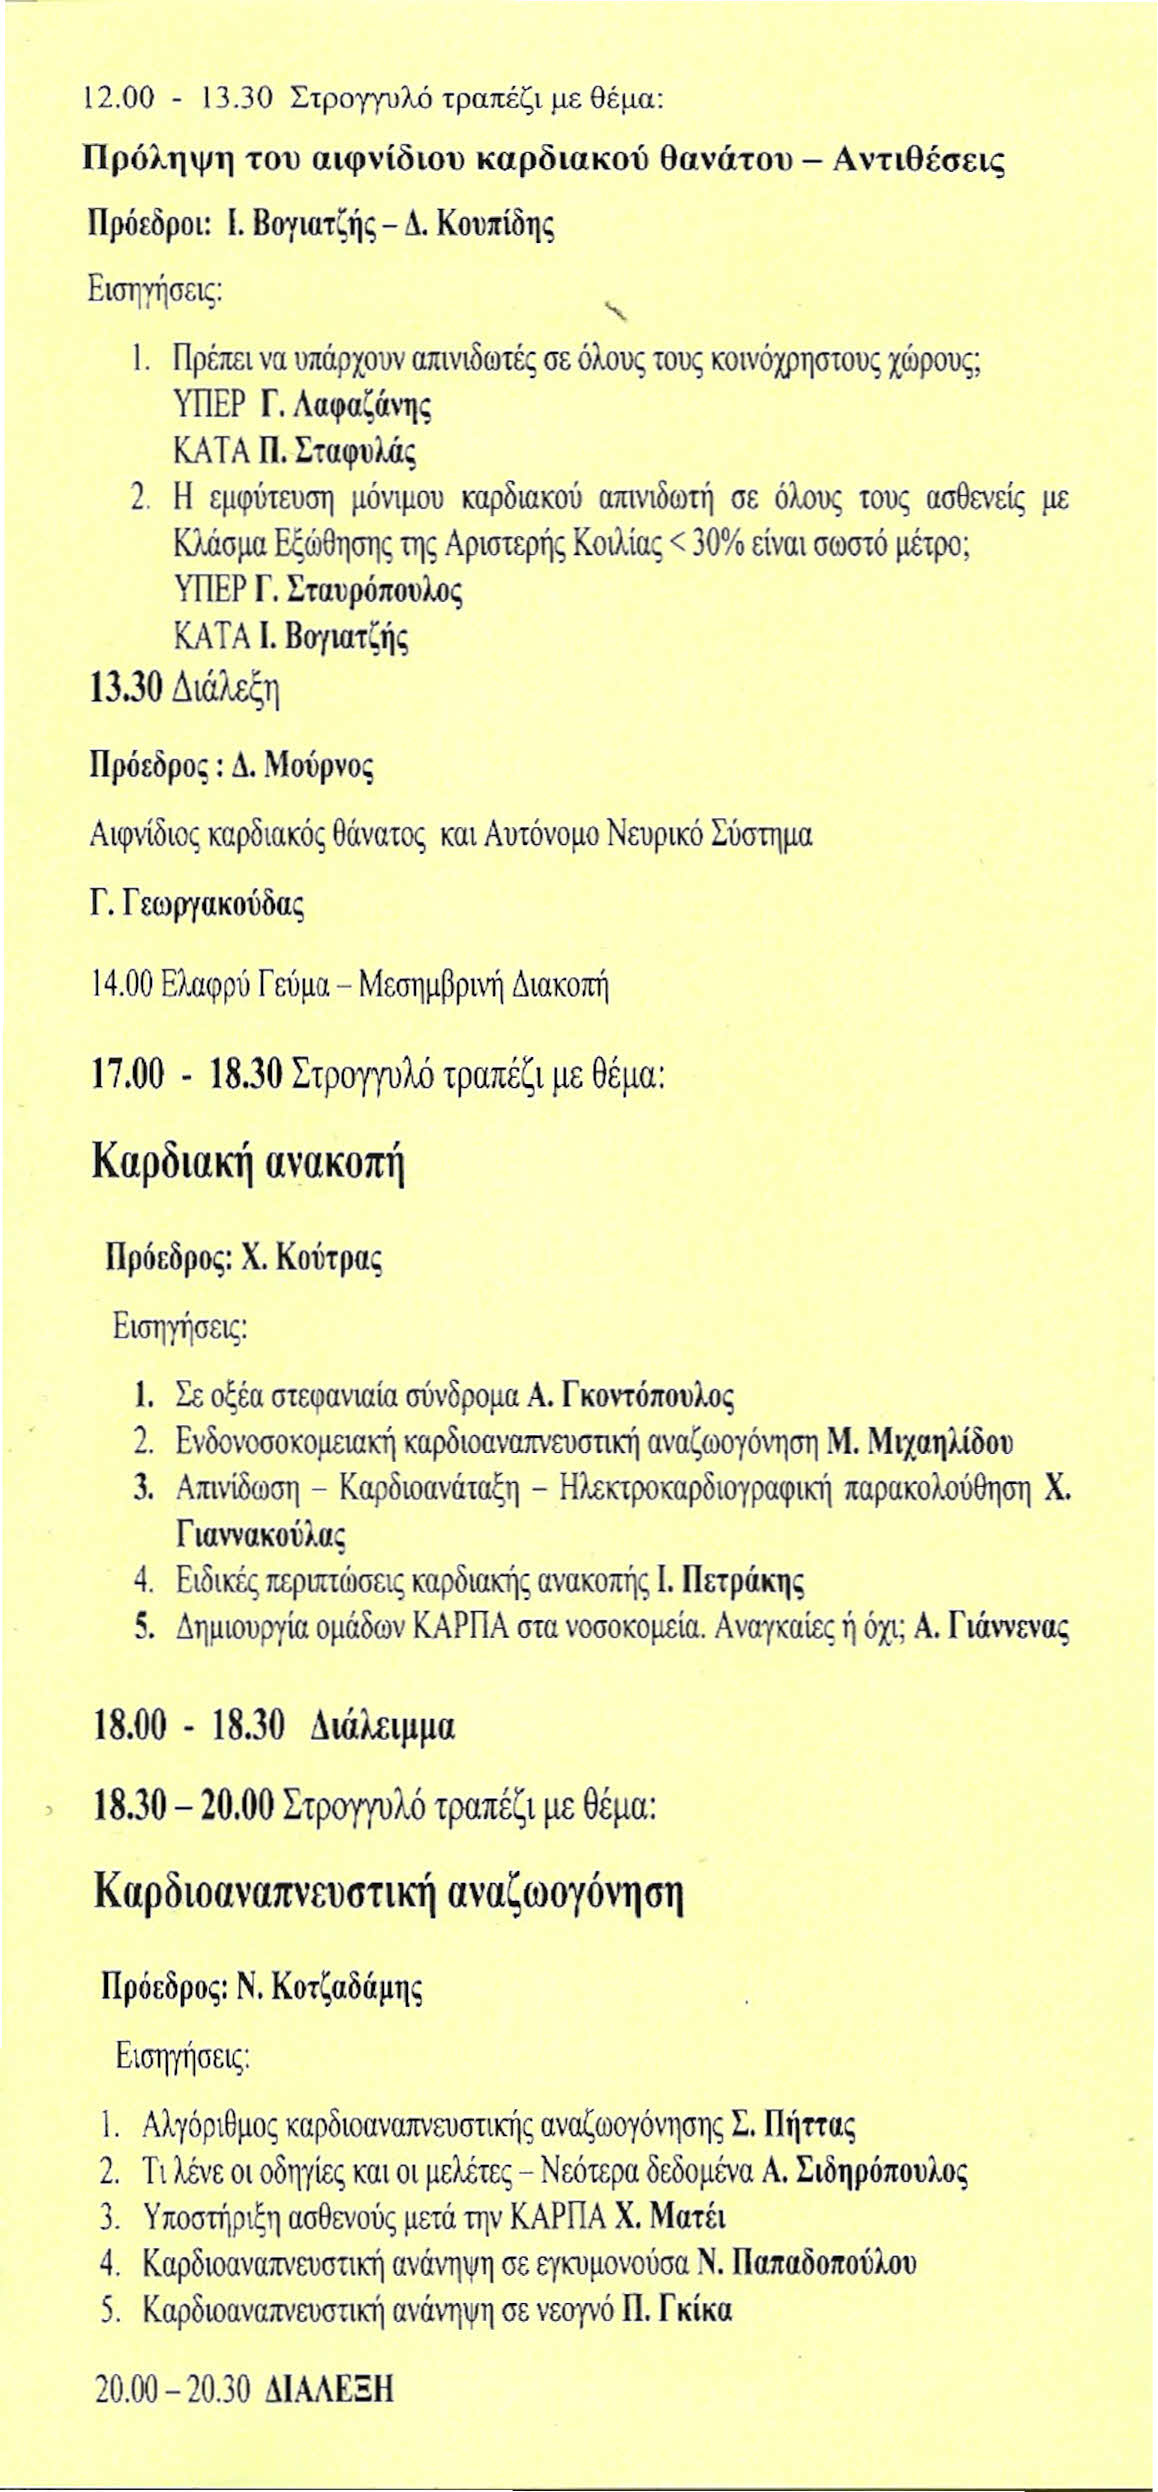 12.00-13.30 Στρογγυλό τραπέζι με θέμα: Πρόληψη του αιφνίδιου καρδιακού θανάτου - Αντιθέσεις Πρόεδροι: Ι. Βογιατζής - Δ. Κουπίδης "- Ι.